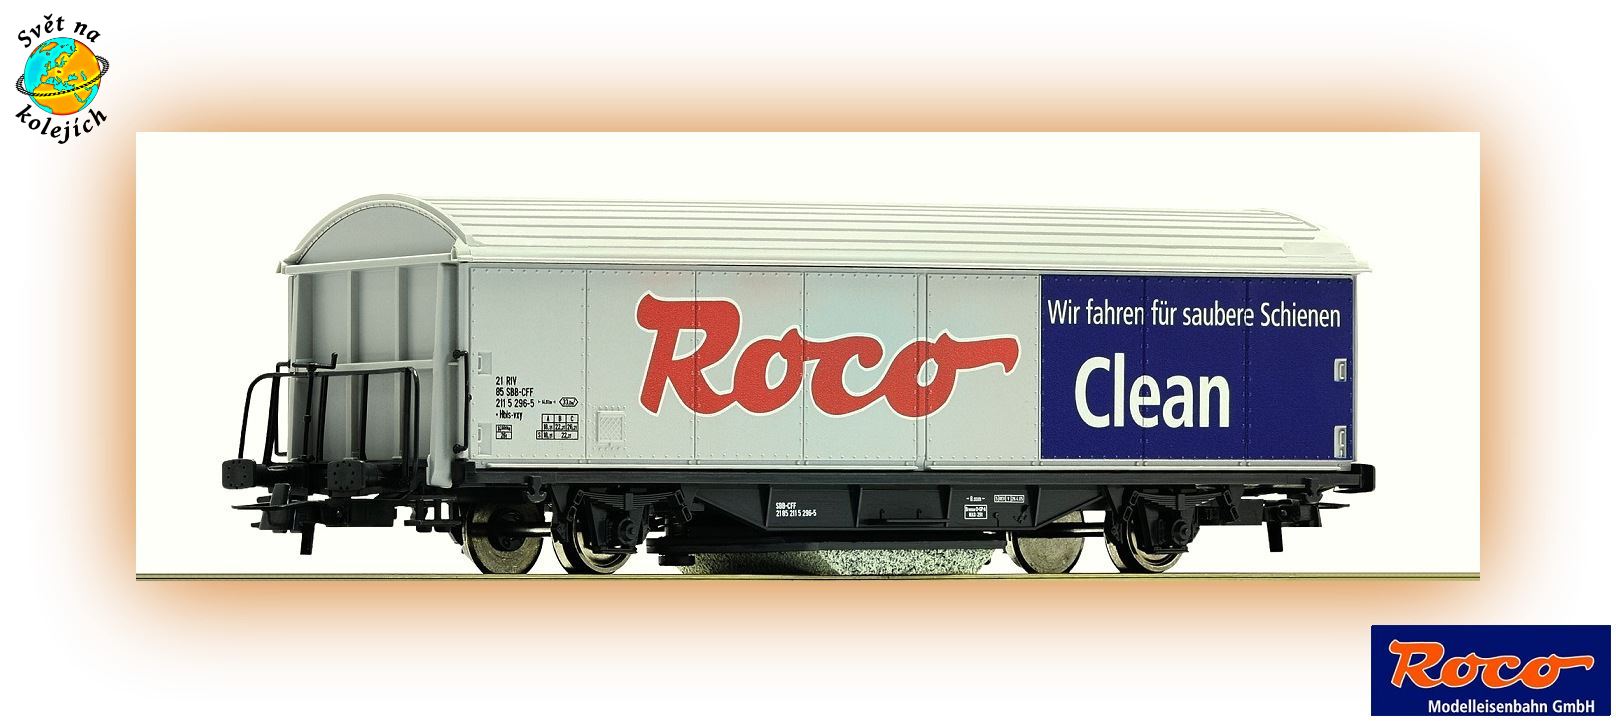 ROCO 46400 HO - ČISTICÍ VŮZ " ROCO CLEAN " 